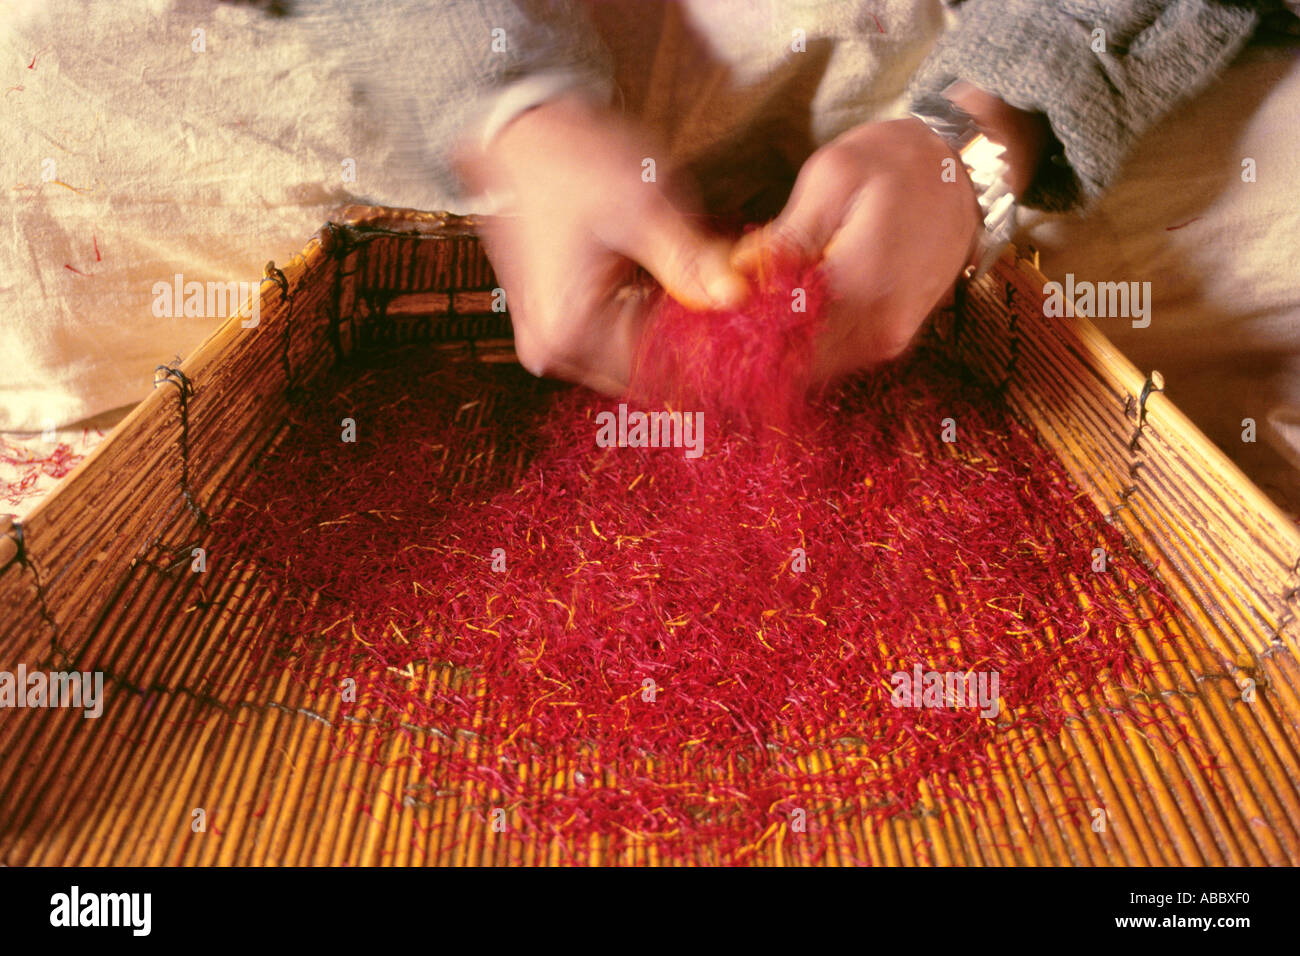 Frotter le safran séché pour séparer les impuretés jaunes, Cachemire, INDE, Asie Banque D'Images